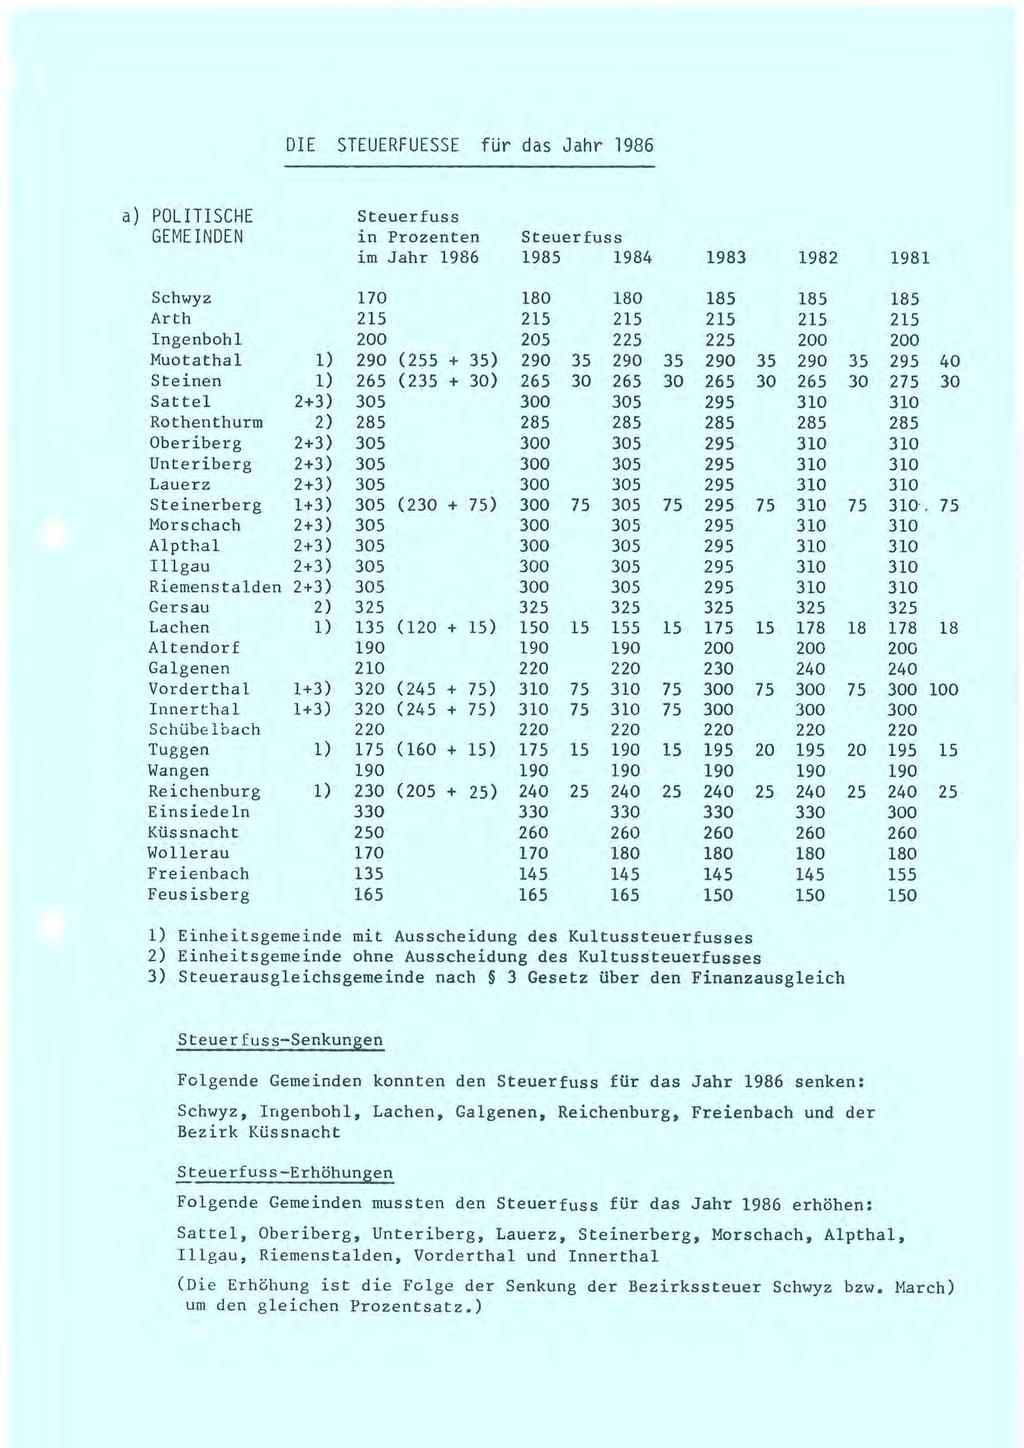 DIE STEUERFUESSE für das Jahr 1986 a) POLITISCHE GEMEINDEN Steuerfuss in Prozenten Steuerfuss im Jahr 1986 1985 1984 Schwyz 170 Ar th 215 Ingenboh 1 200 Muotathal 1) 290 (5 + 35) Steinen 1) 265 (235